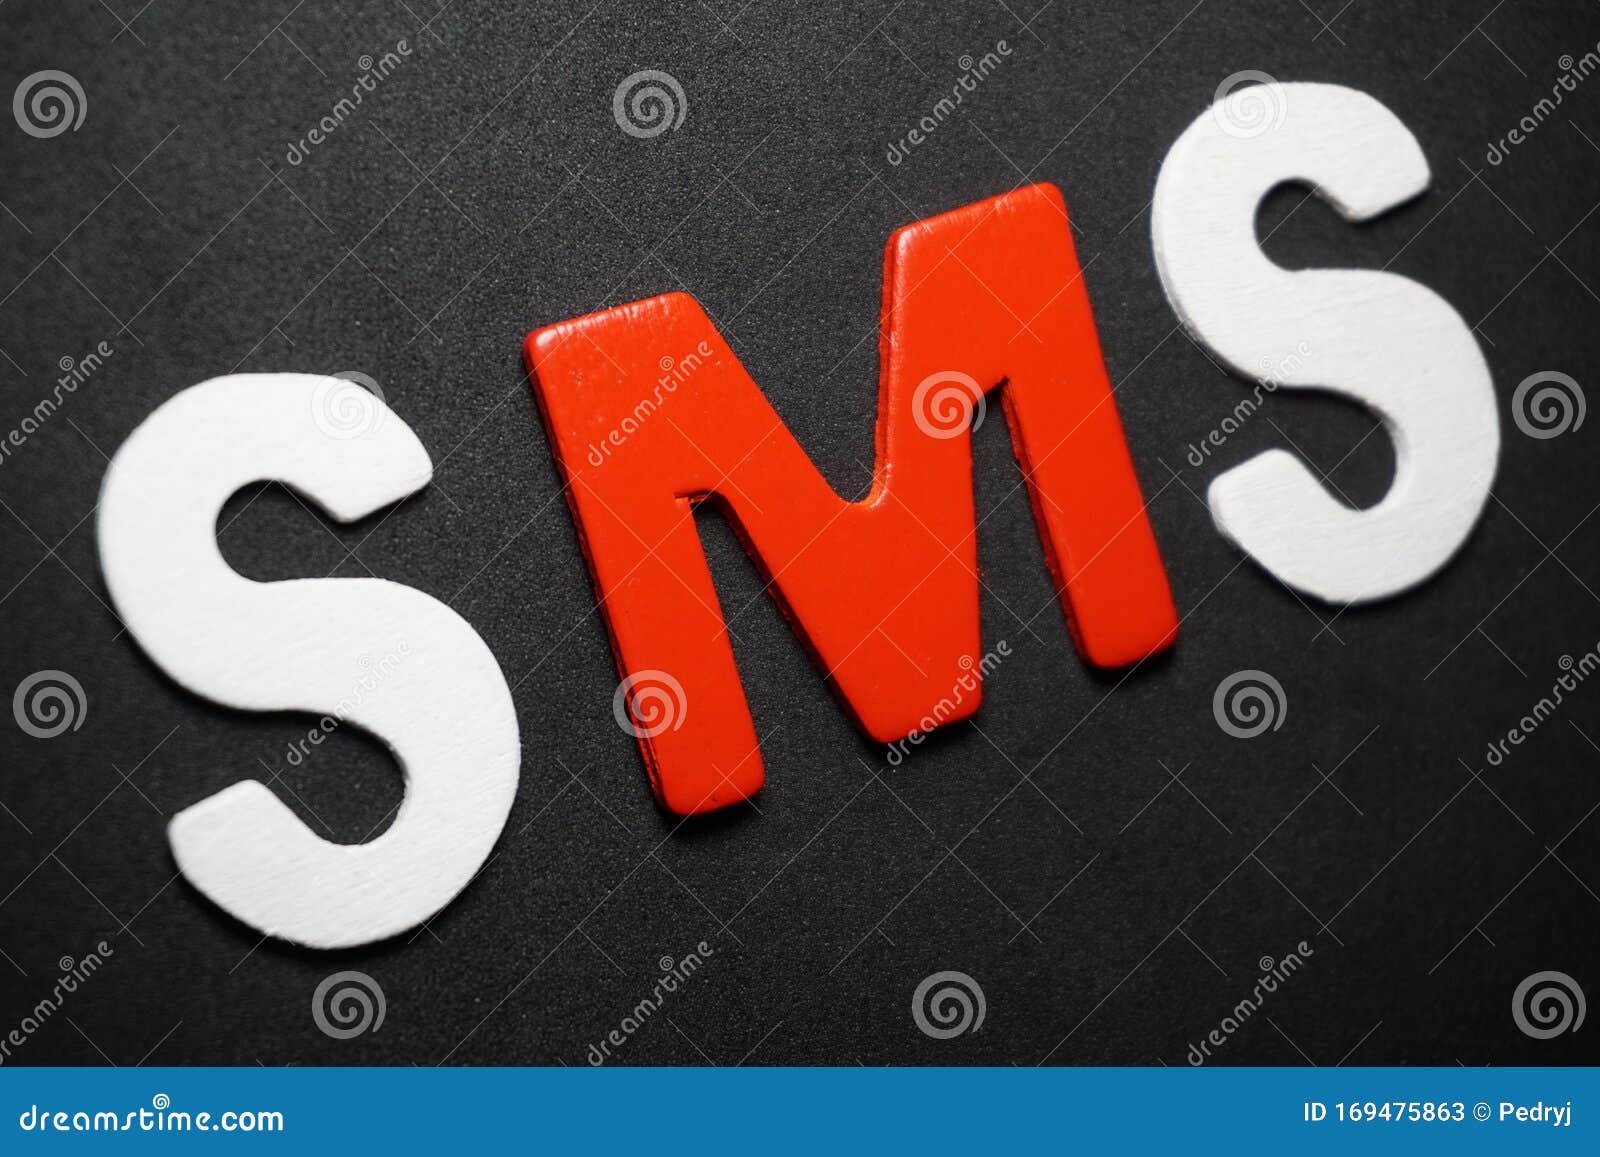 SMS on black background stock image. Image of background - 169475863